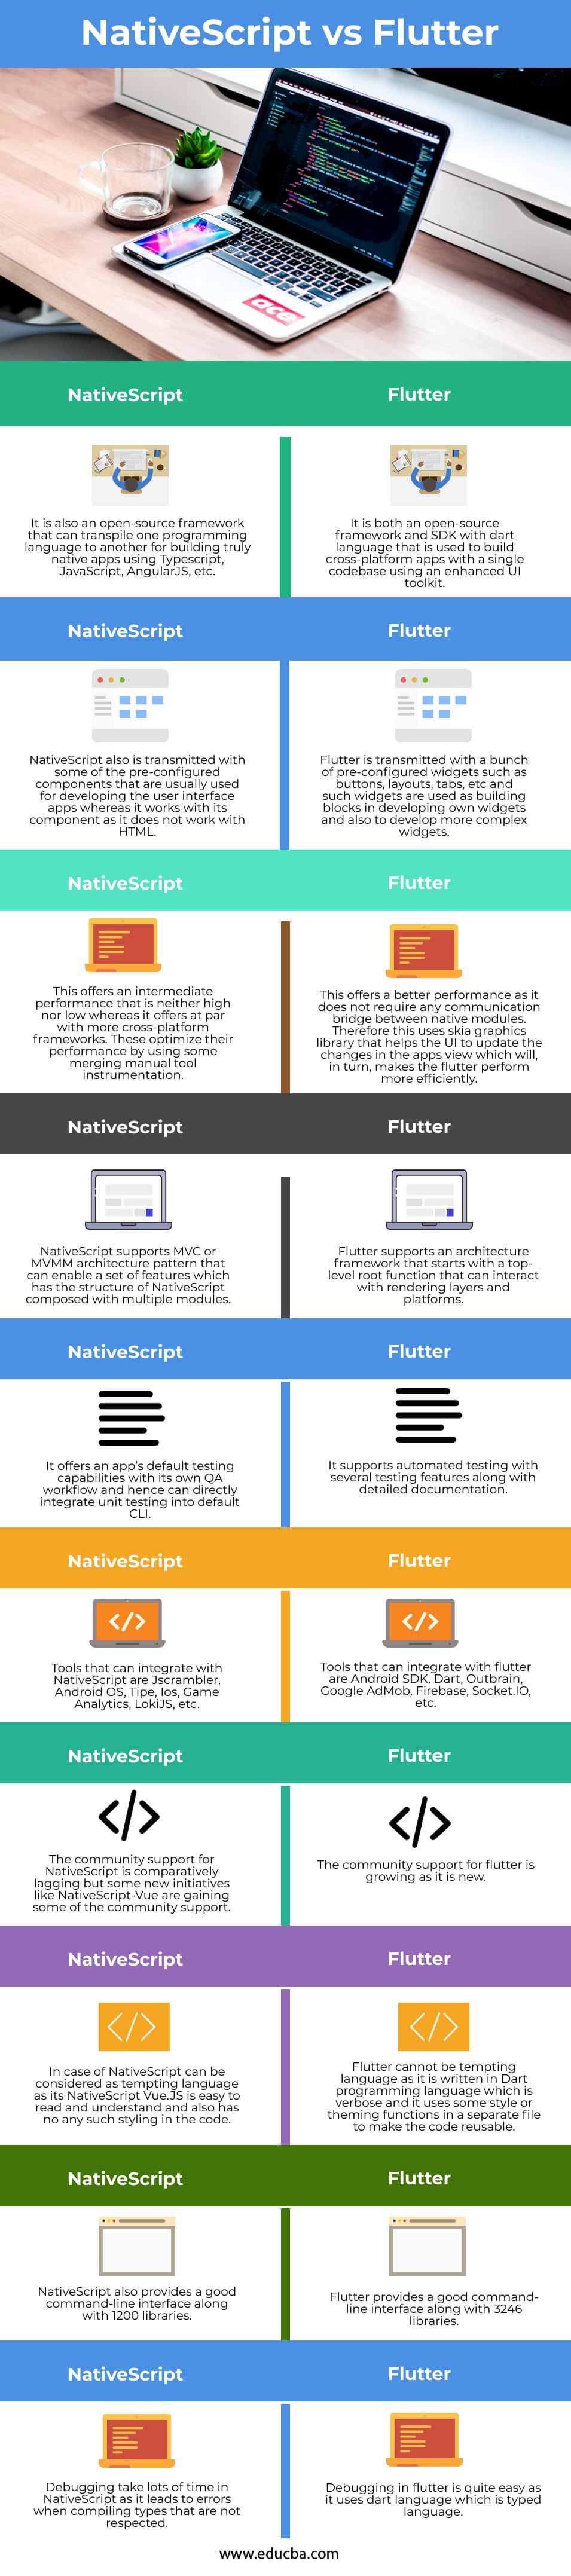 NativeScript-vs-Flutter-info